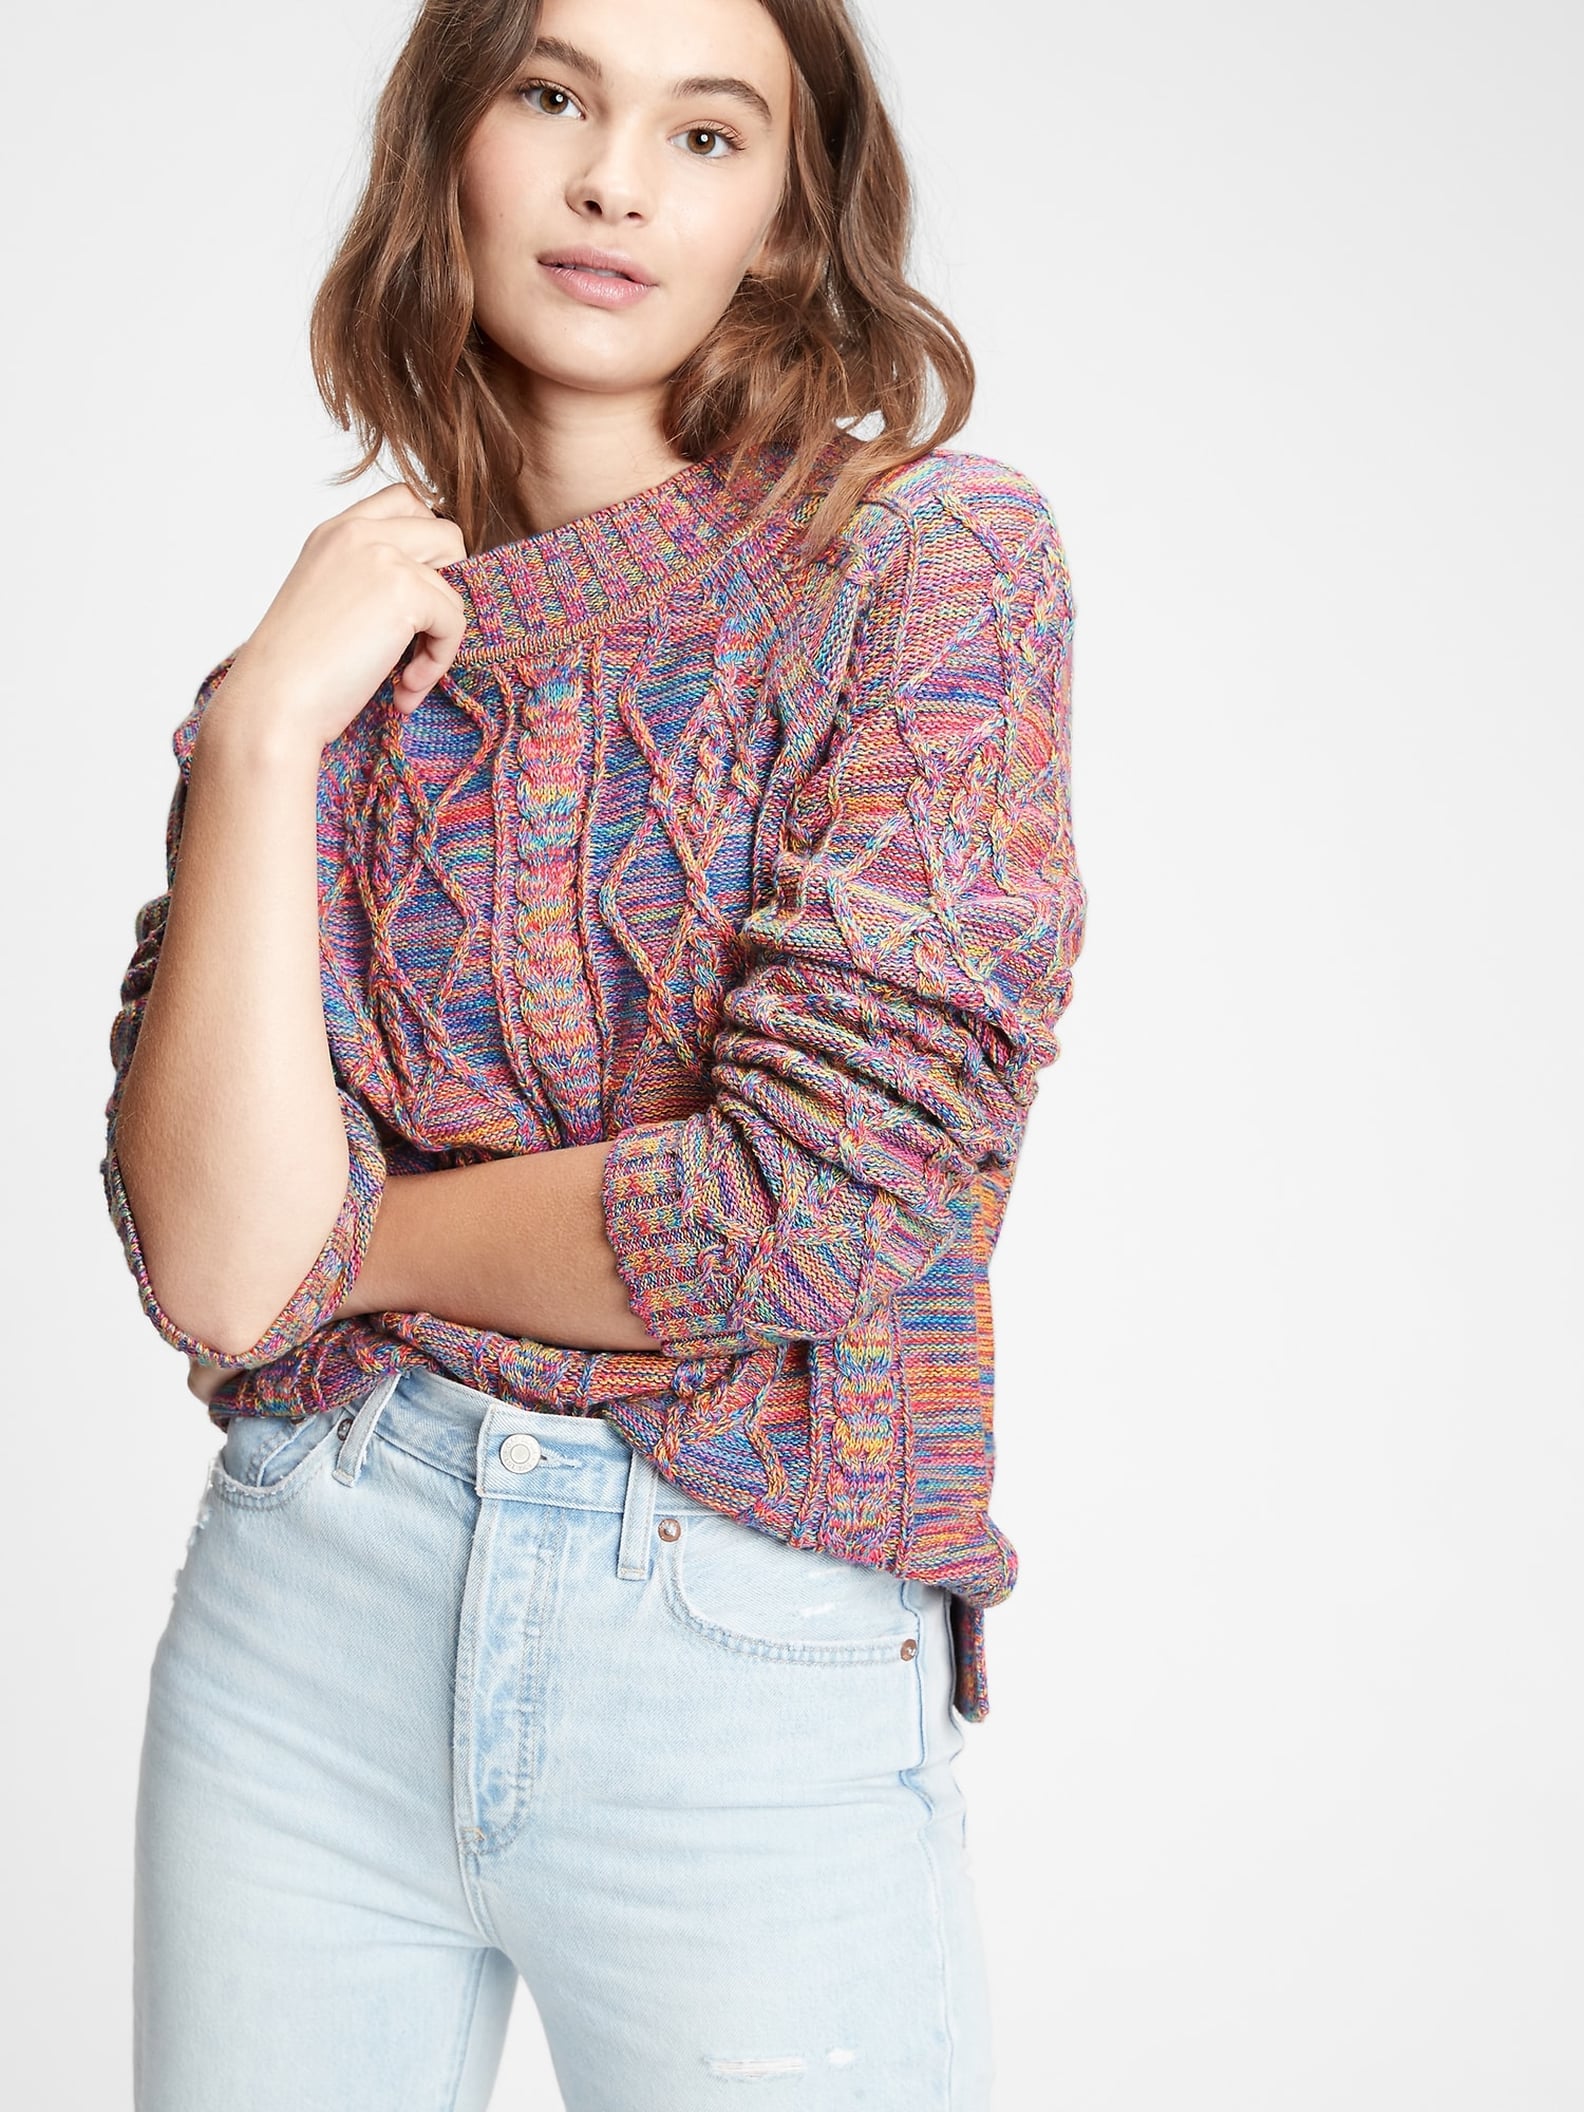 Best Sweaters From Gap Under $75 | POPSUGAR Fashion